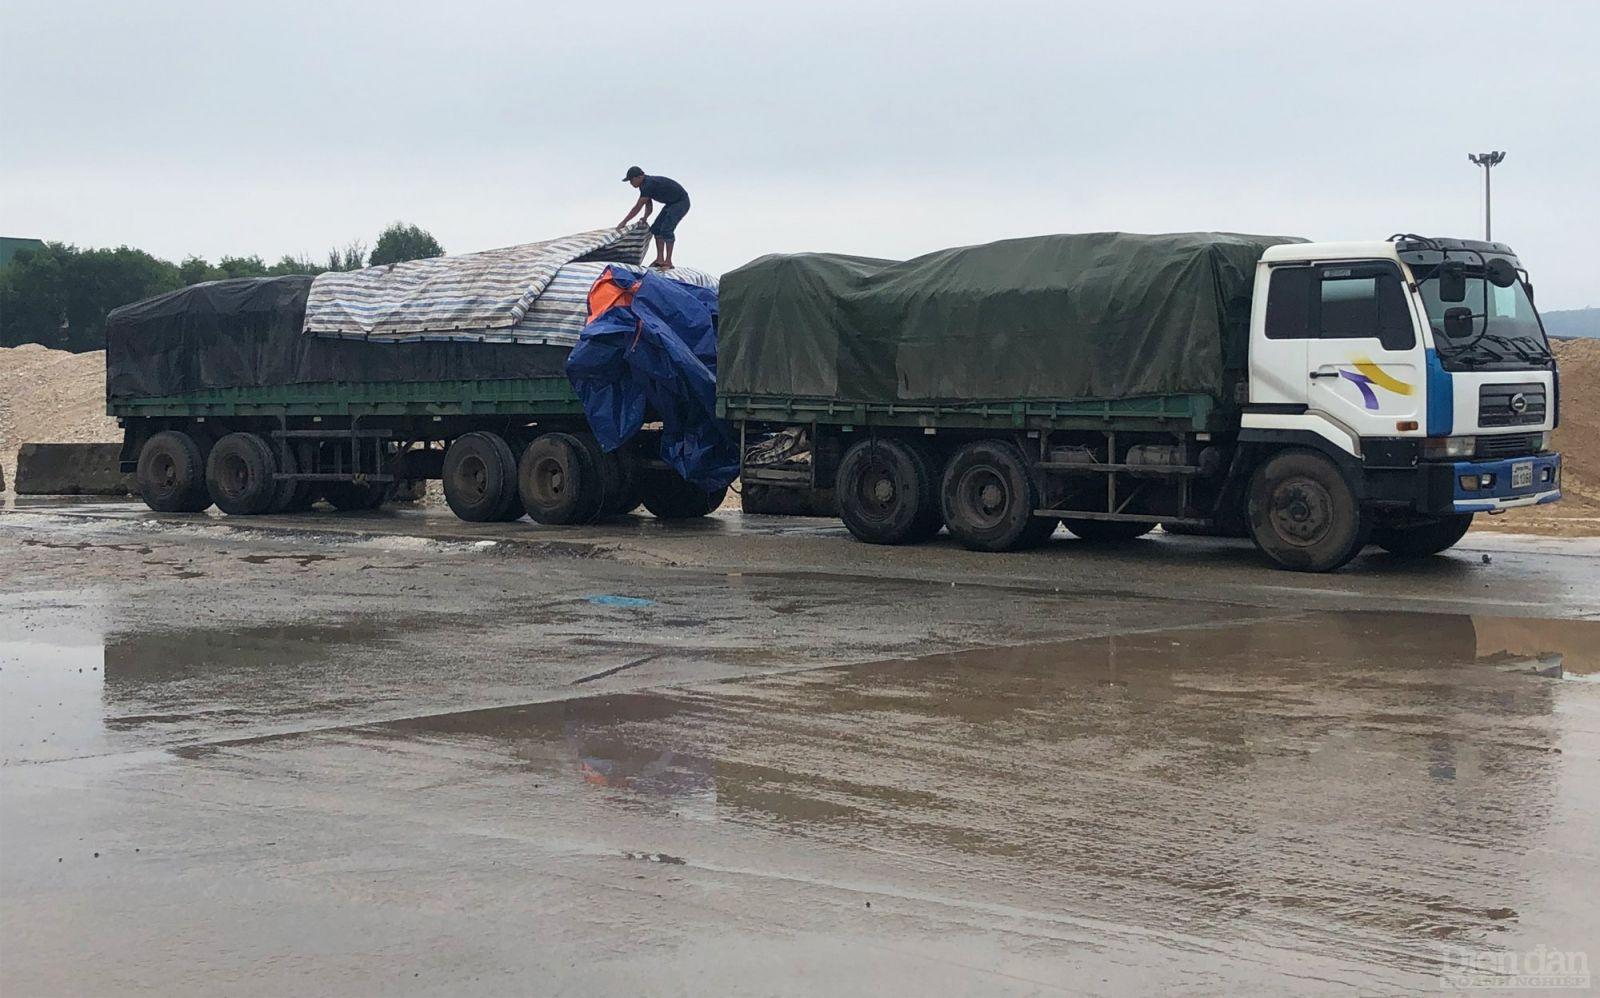 Sáng ngày 26/10, PV Diễn đàn Doanh nghiệp ghi nhận có hàng chục chiếc xe 2 khúc mang biển kiểm soát nước ngoài chở đầy hàng hoá nghi là Kali từ Quảng Bình về nằm chờ la liệt trong khu vực nội bộ cảng Cửa Lò (Nghệ An) để trả hàng